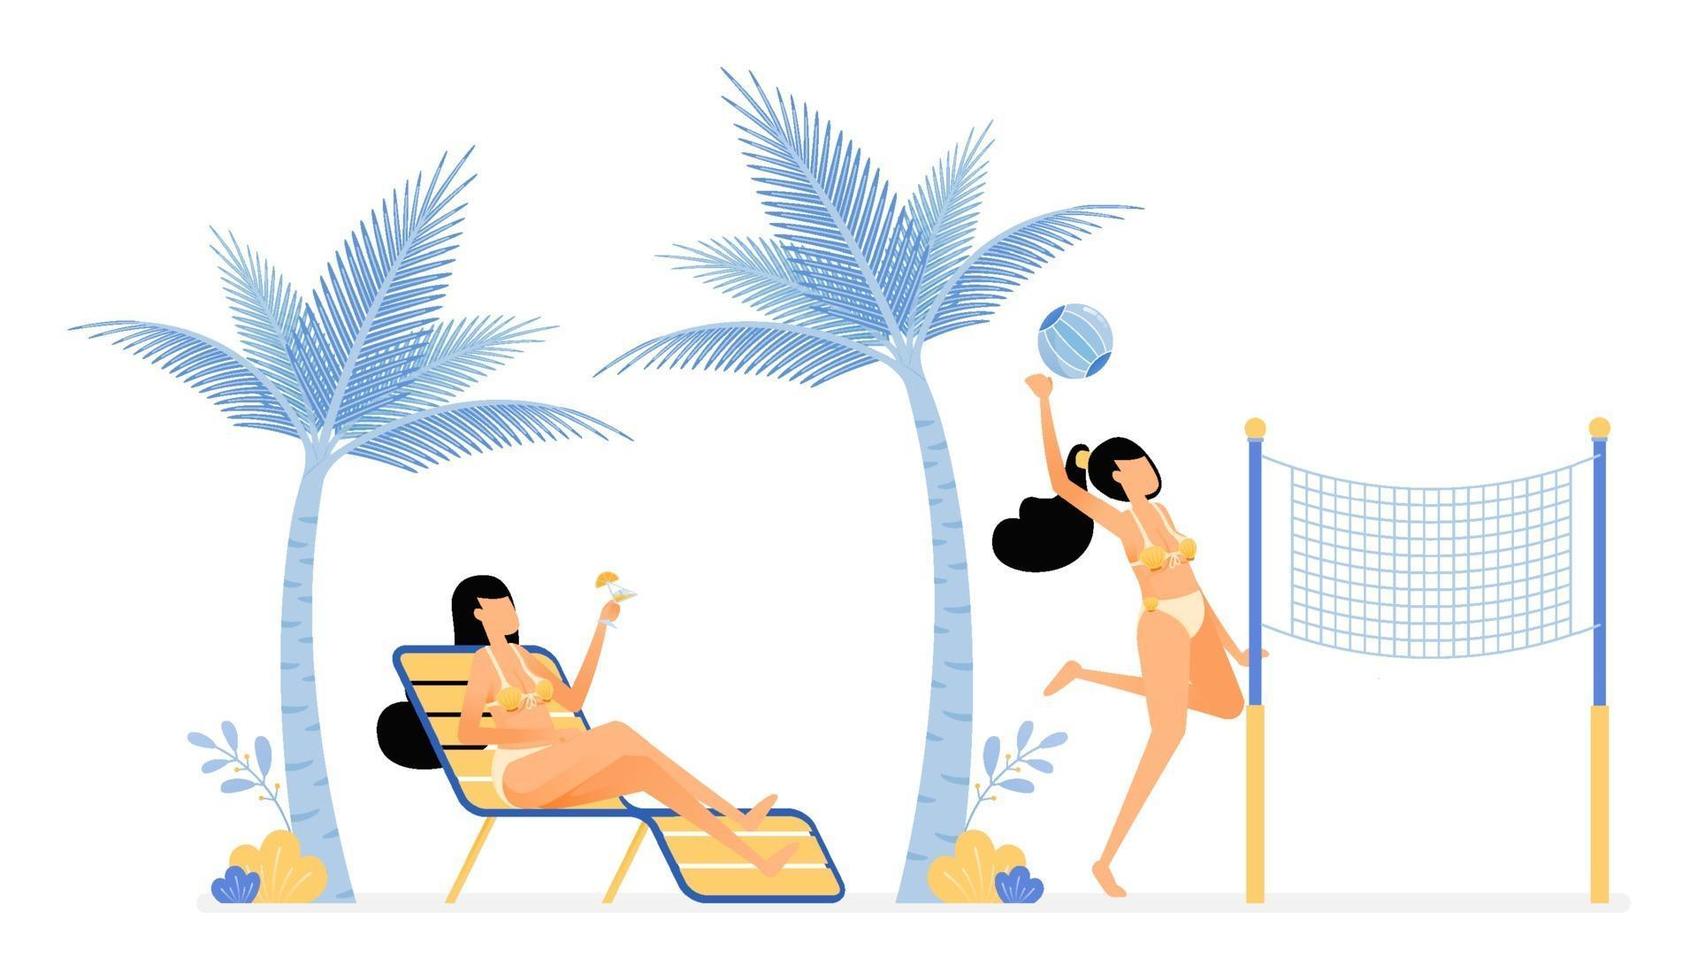 lycklig semesterillustration av kvinnor som kopplar av och njuter av semestern på stranden genom att ligga under kokospalmer eller spela volleybollvektordesign kan användas för affischbannerannonswebbplats mobil mobil marknadsföring vektor